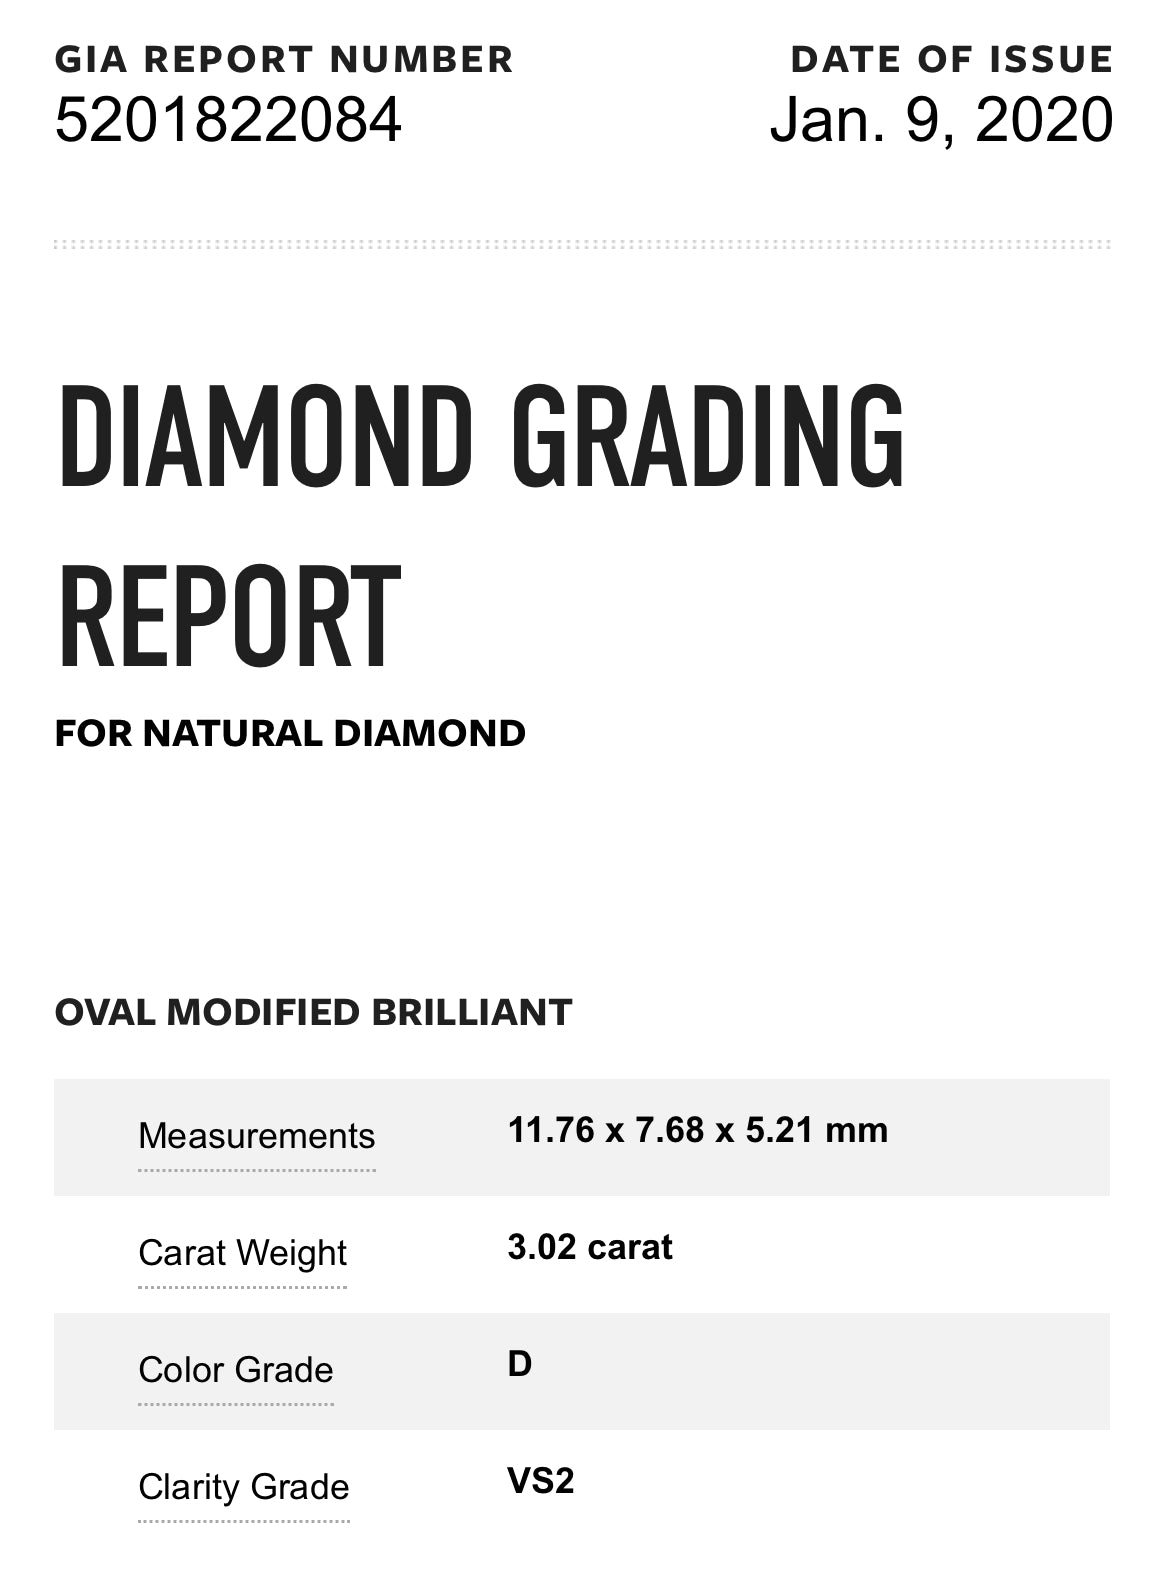 3.02 oval diamond GIA San Diego 